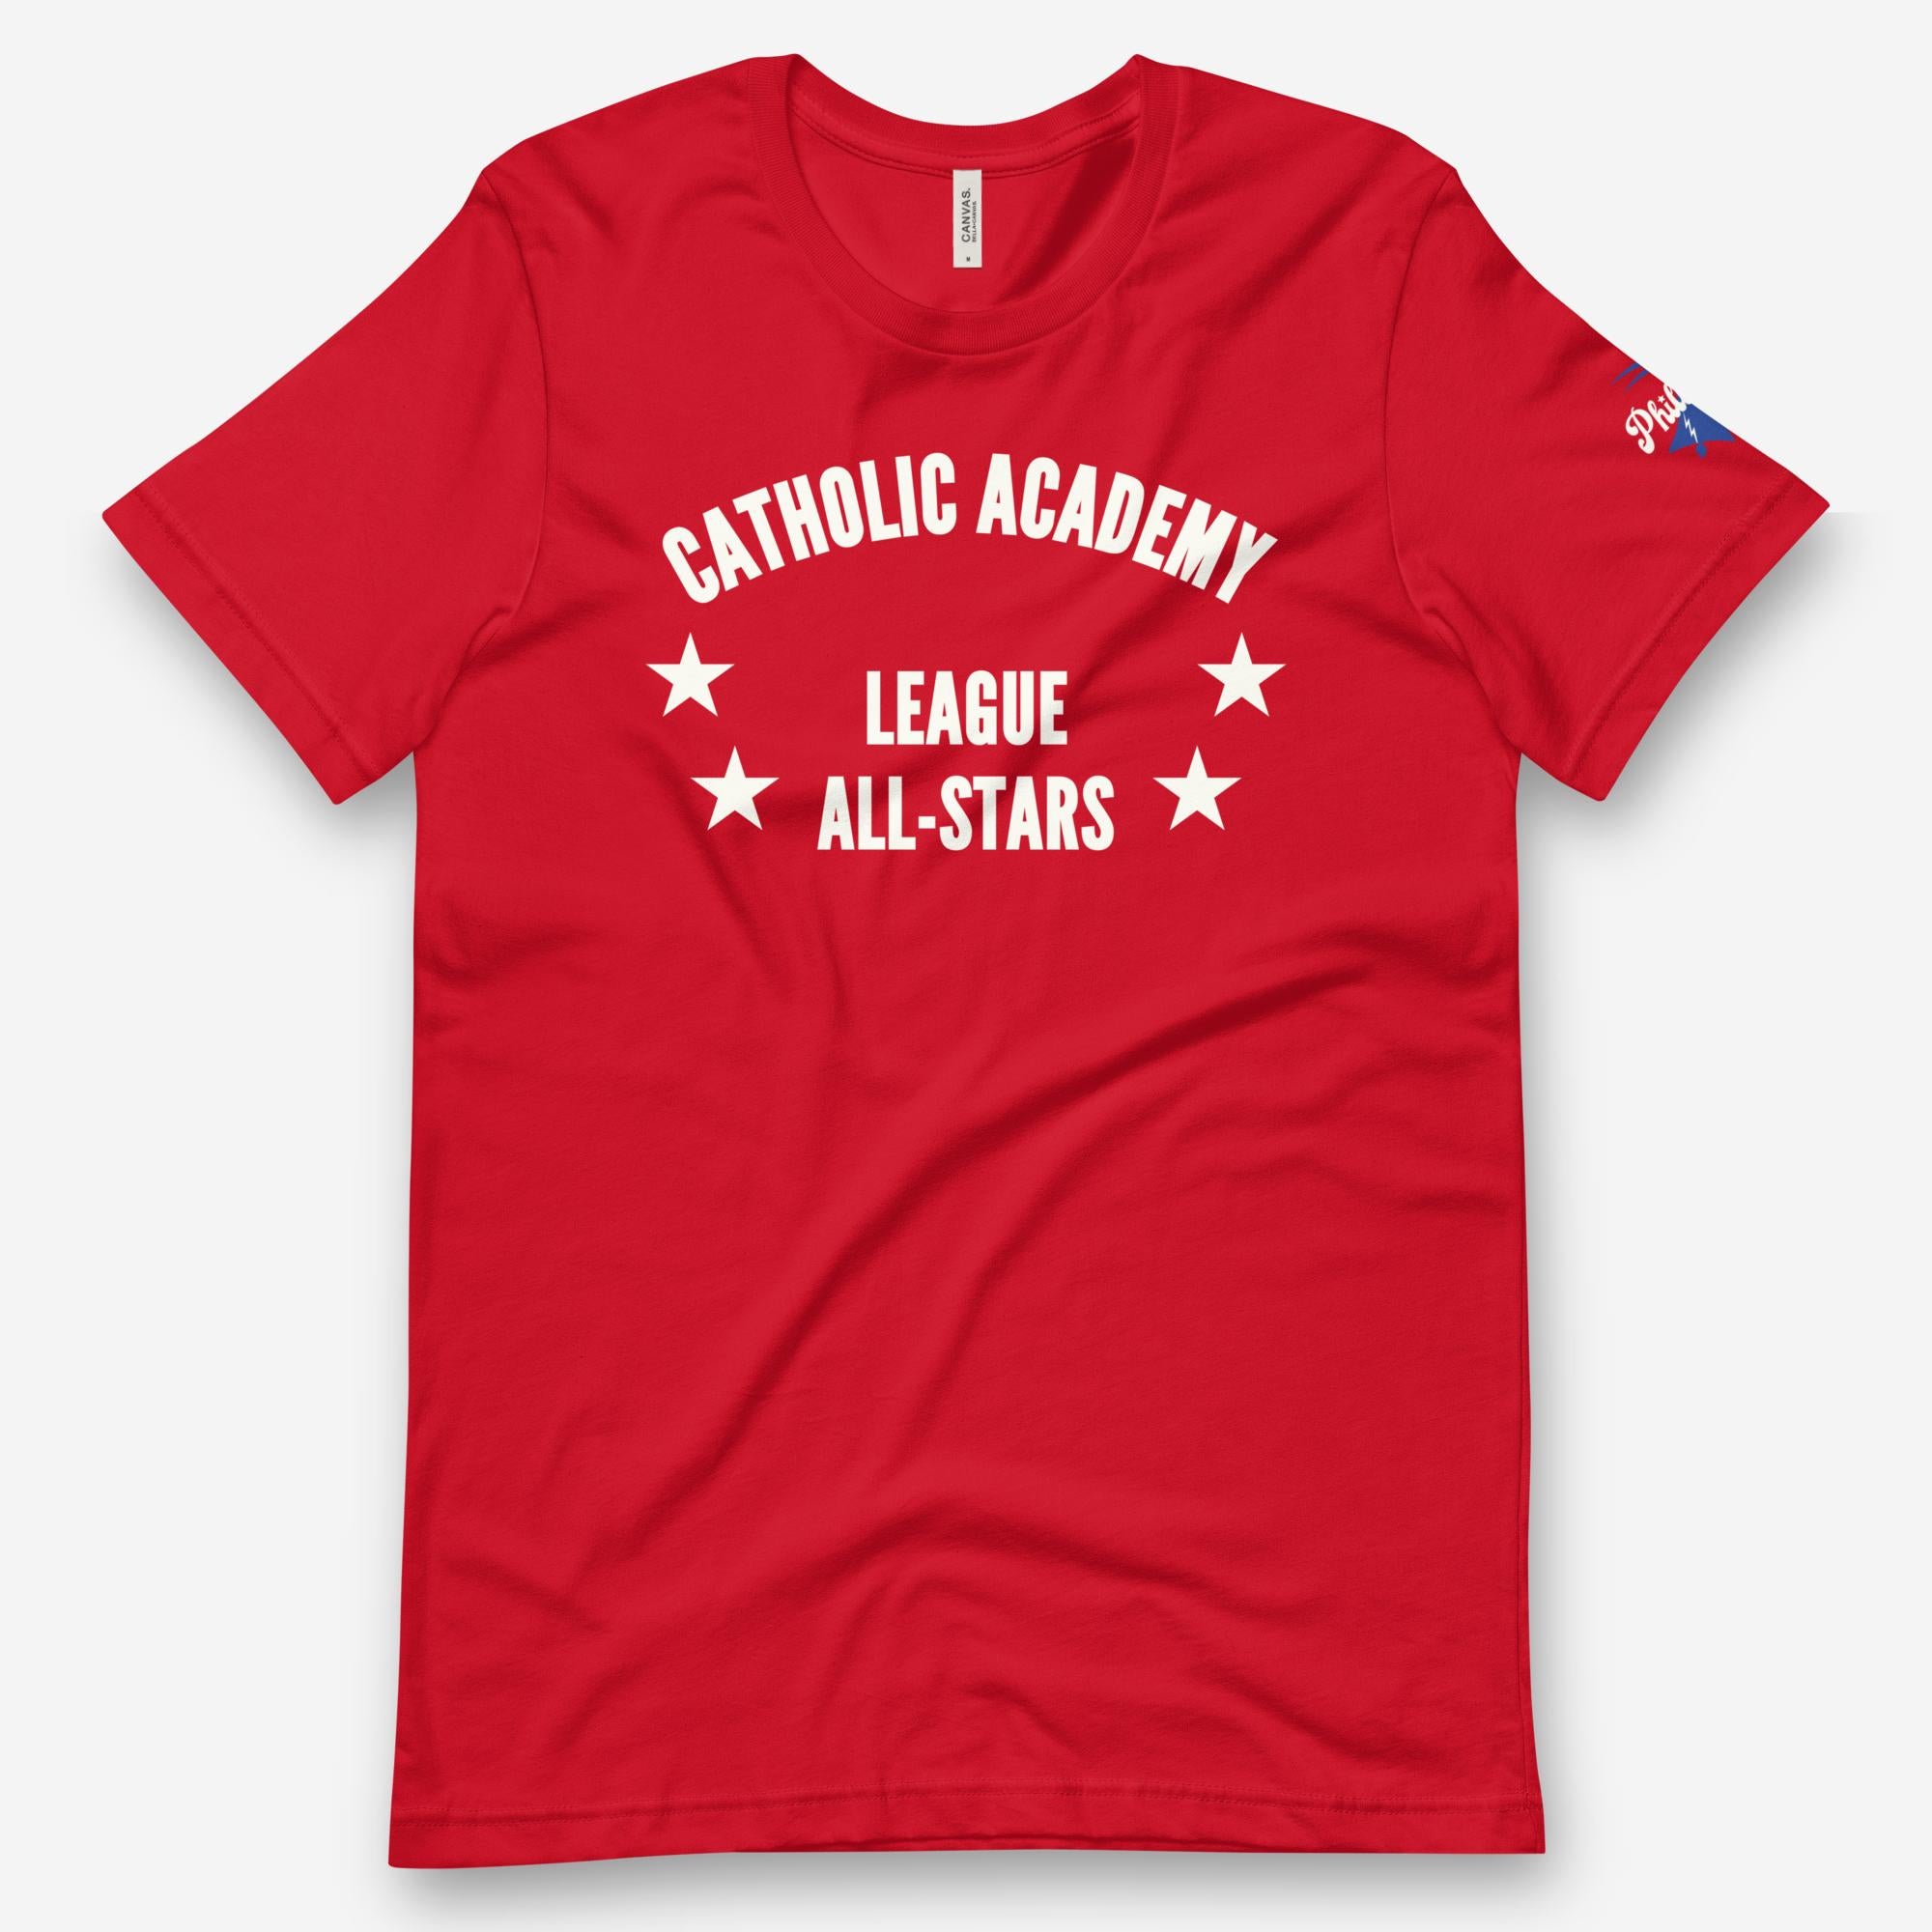 "Catholic Academy League All-Stars" Tee